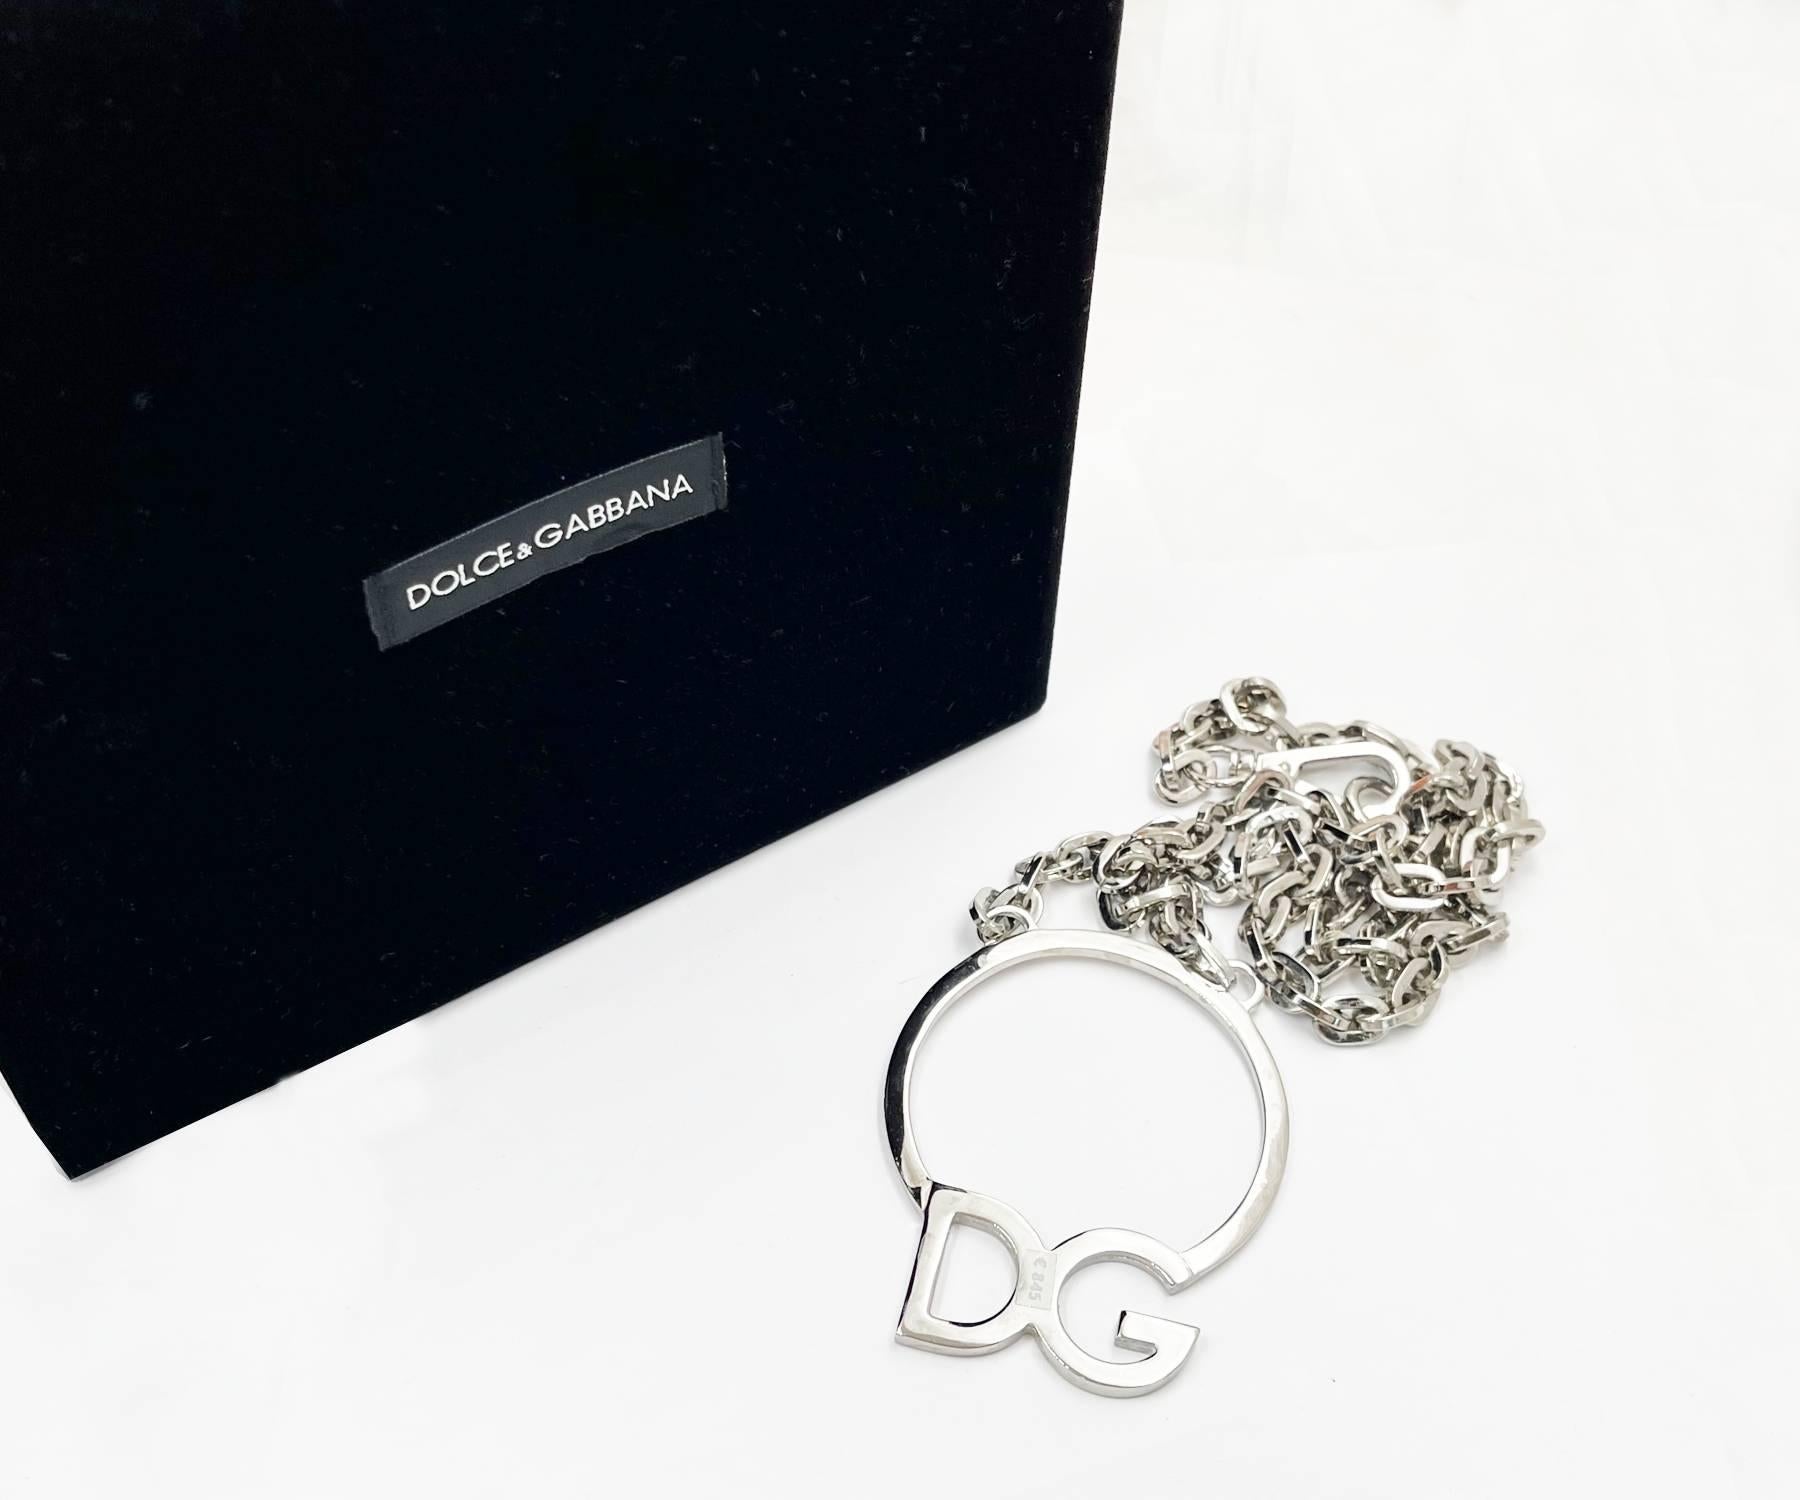 Dolce &Gabbana Silver Large Pendentif Chain Long Necklace

*Marqué Dolce &Gabbana
*Vient avec la boîte rigide en velours d'origine et la fiche de prix.
*Nouveau modèle. Affichage au sol
*Le prix initial était de 845 euros.

-La chaîne fait environ